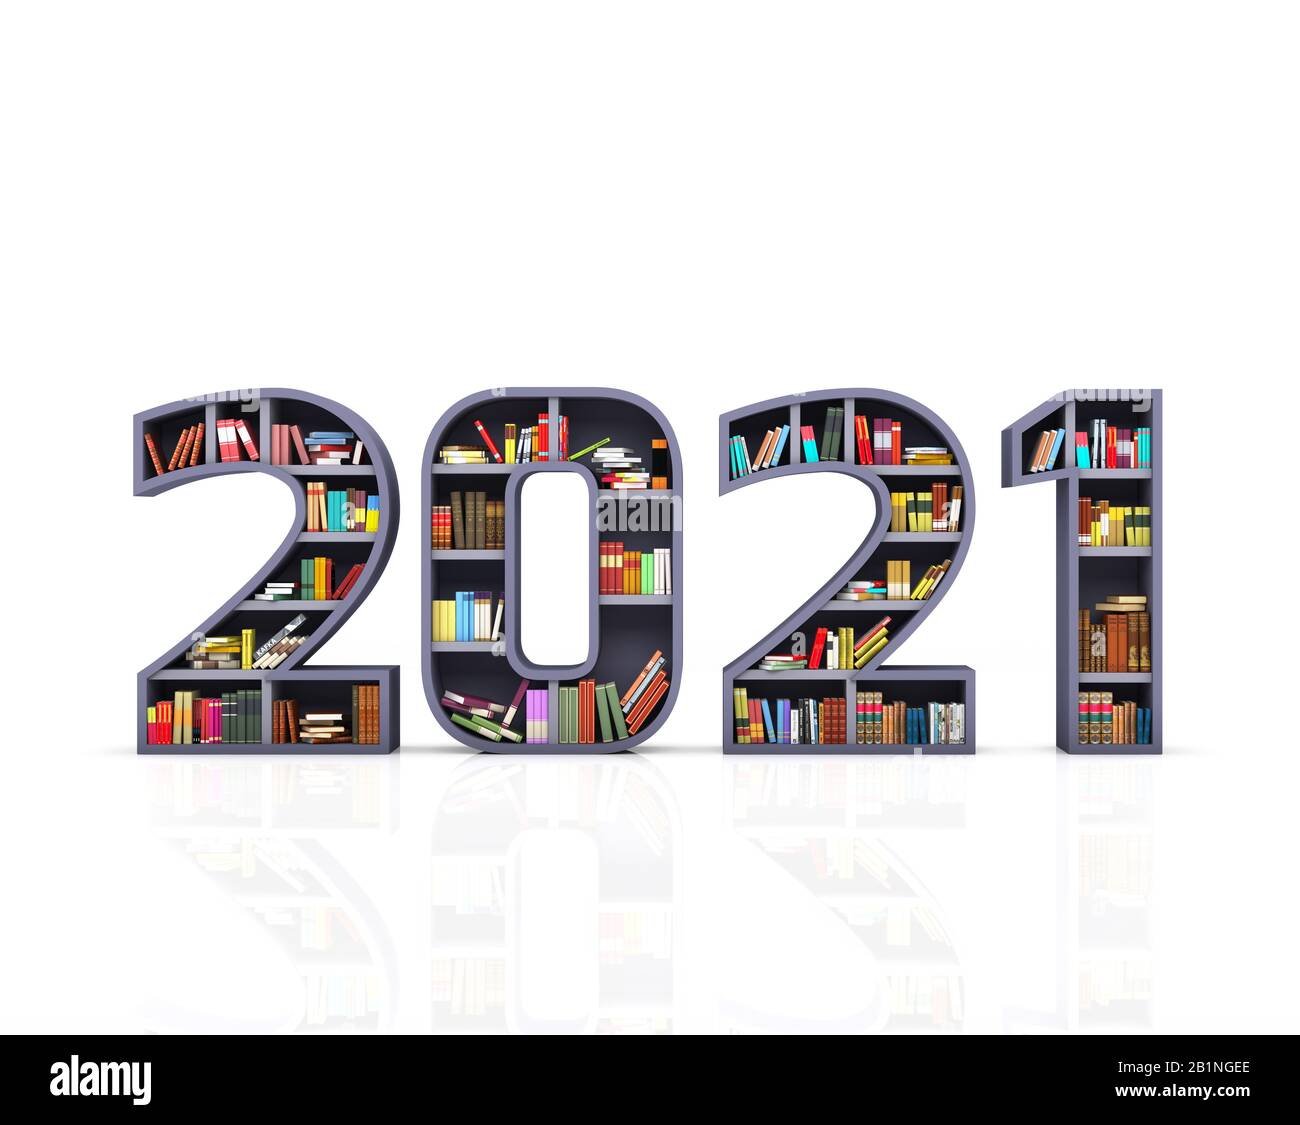 Neues Jahr 2021 Kreatives Designkonzept mit Bücherregal - 3D Gerendertes Bild Stockfoto